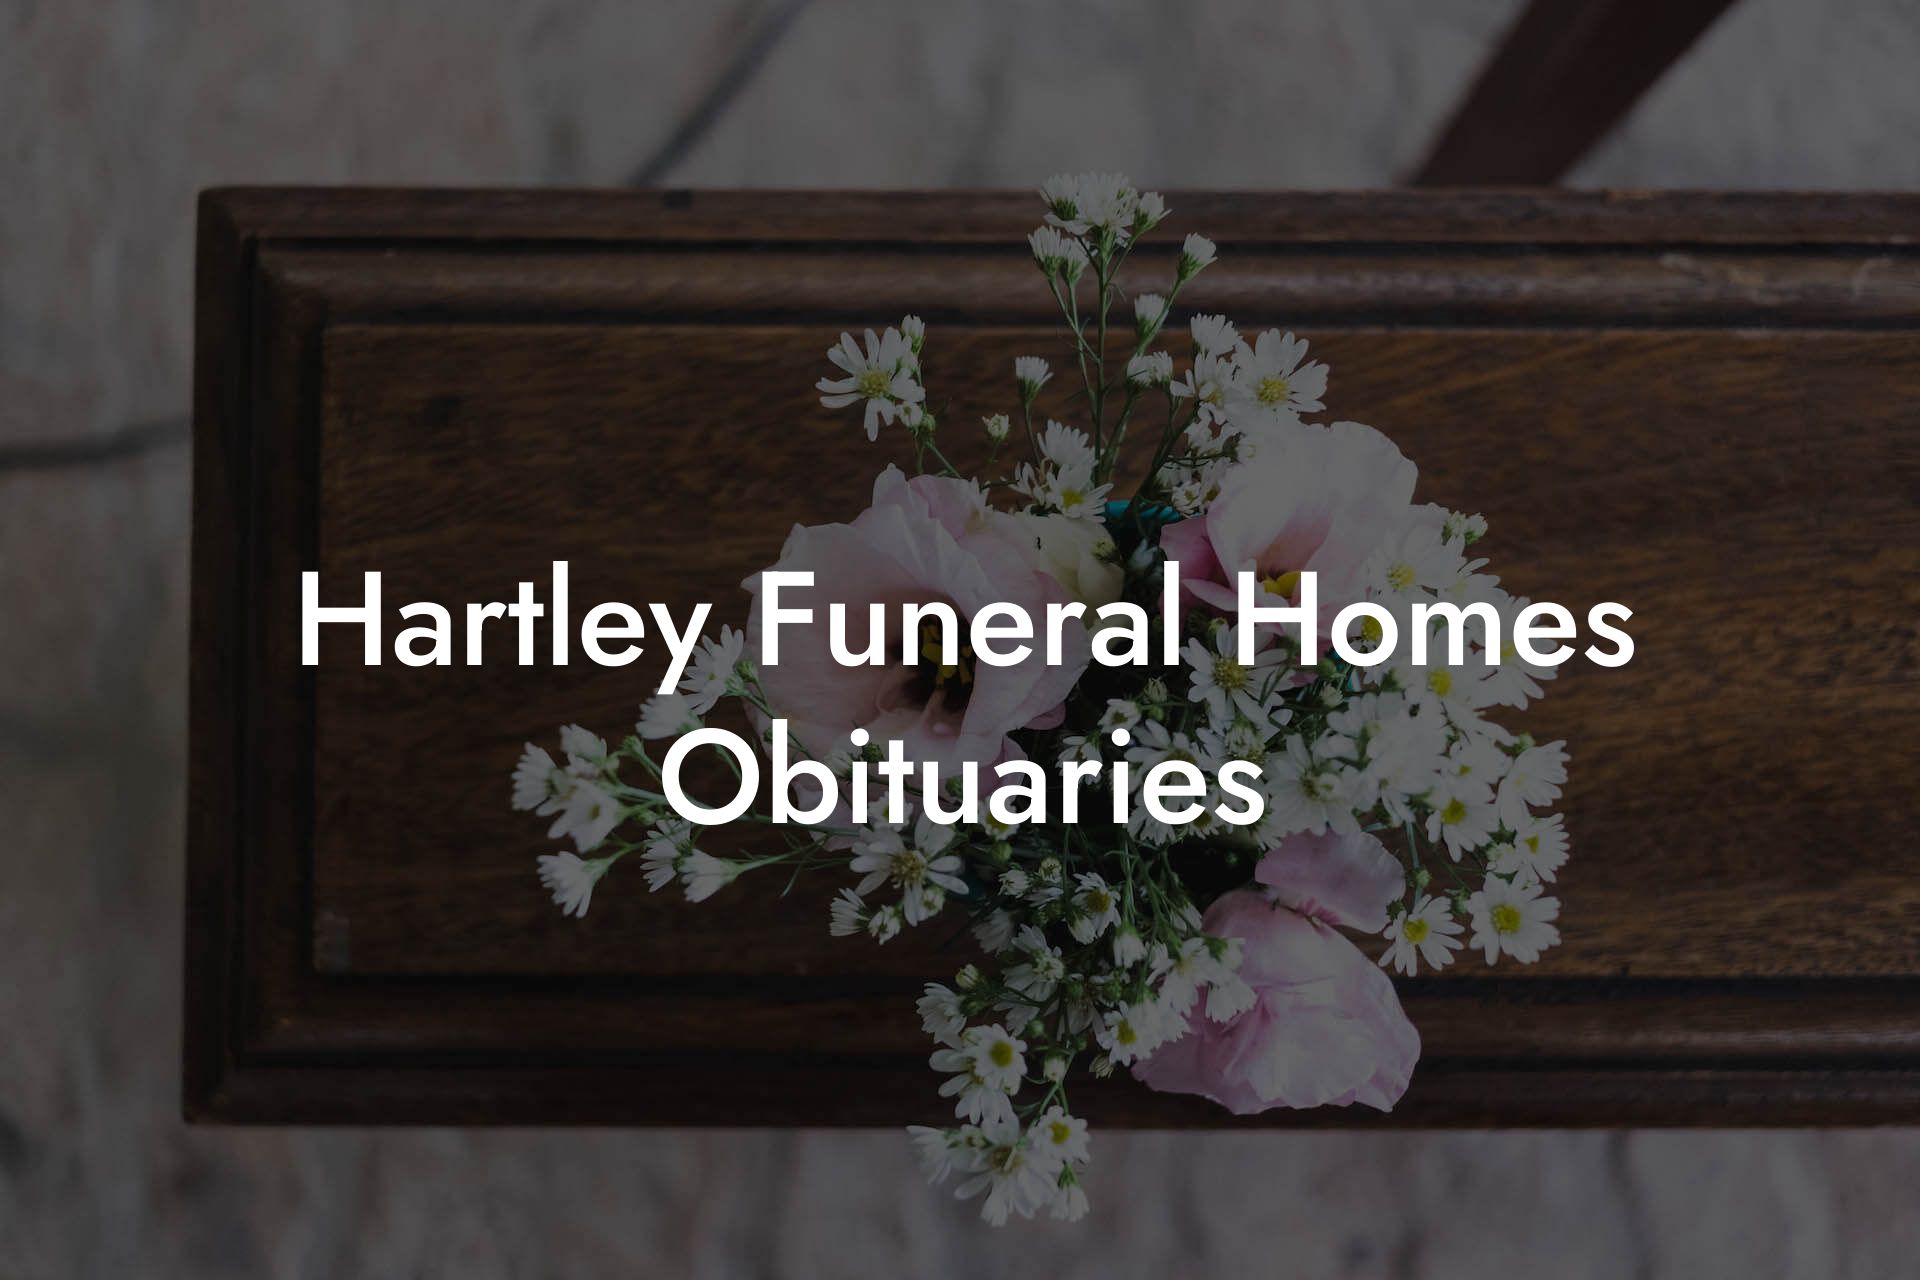 Hartley Funeral Homes Obituaries